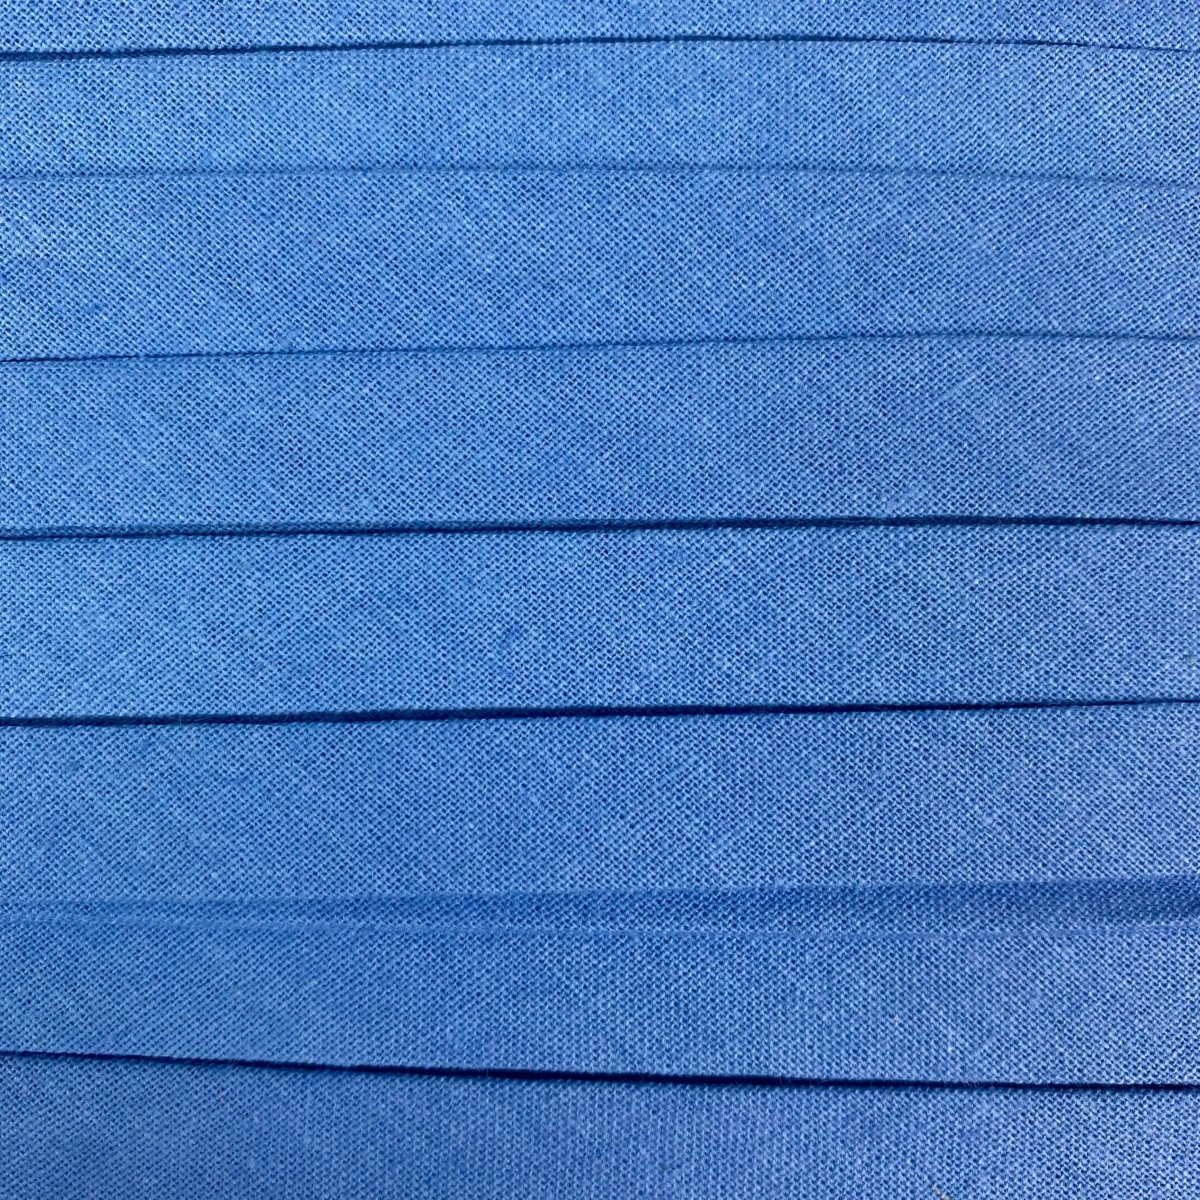 Sewing Gem - 25mm Bias Binding - Double Fold  - 100% Cotton